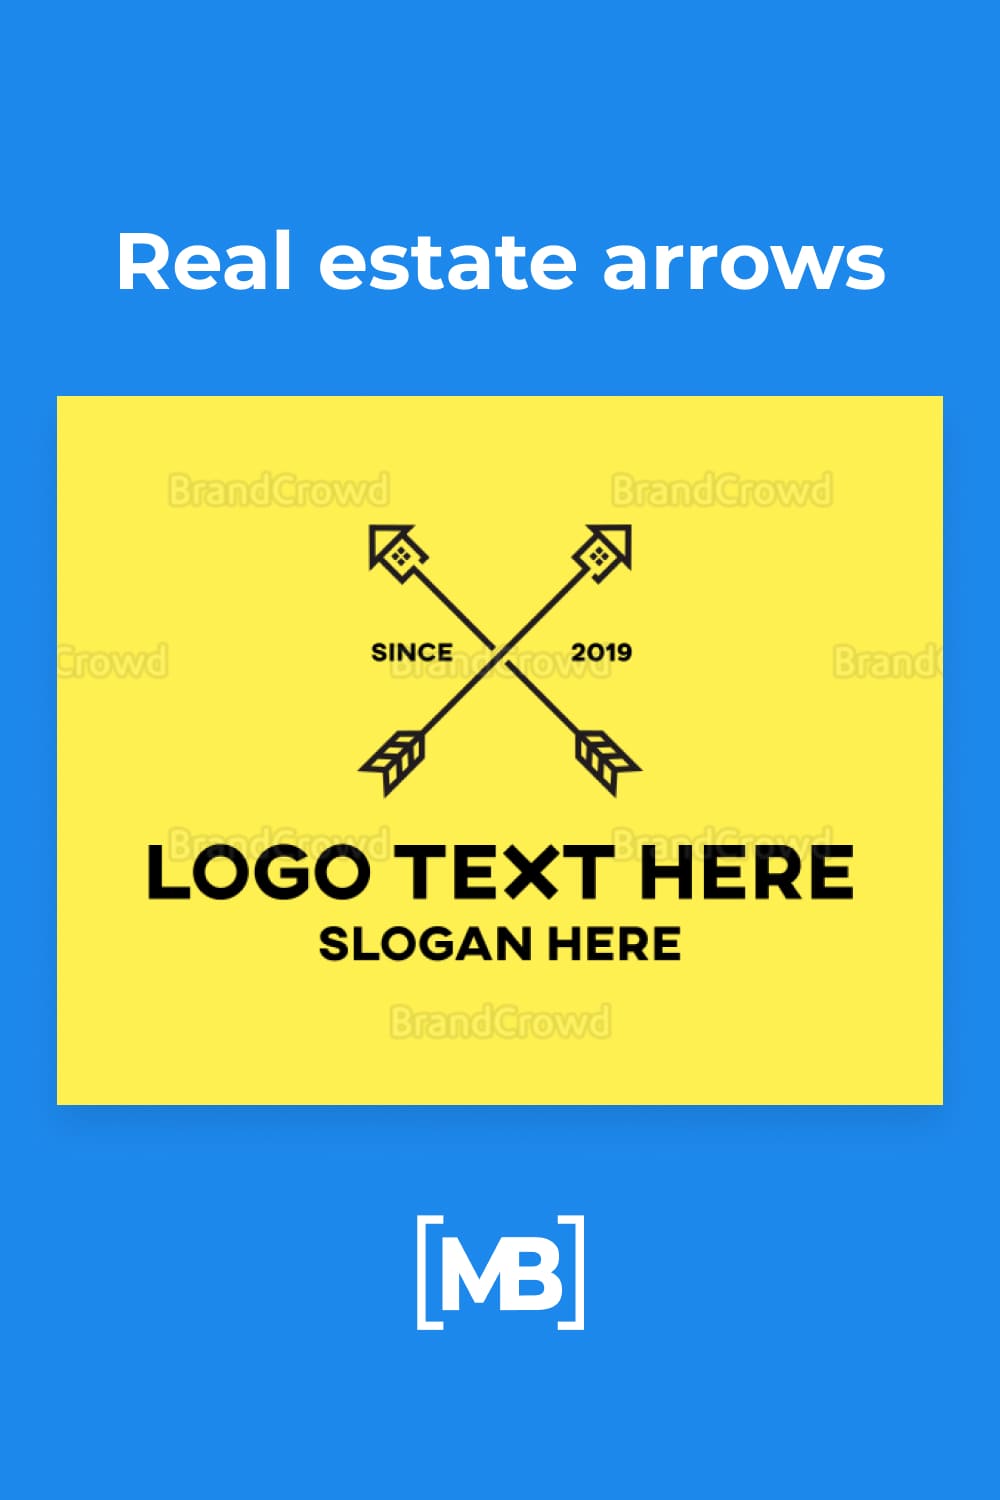 This logo design is perfect if you need house logos, home logos, realtor logos or builder logos.